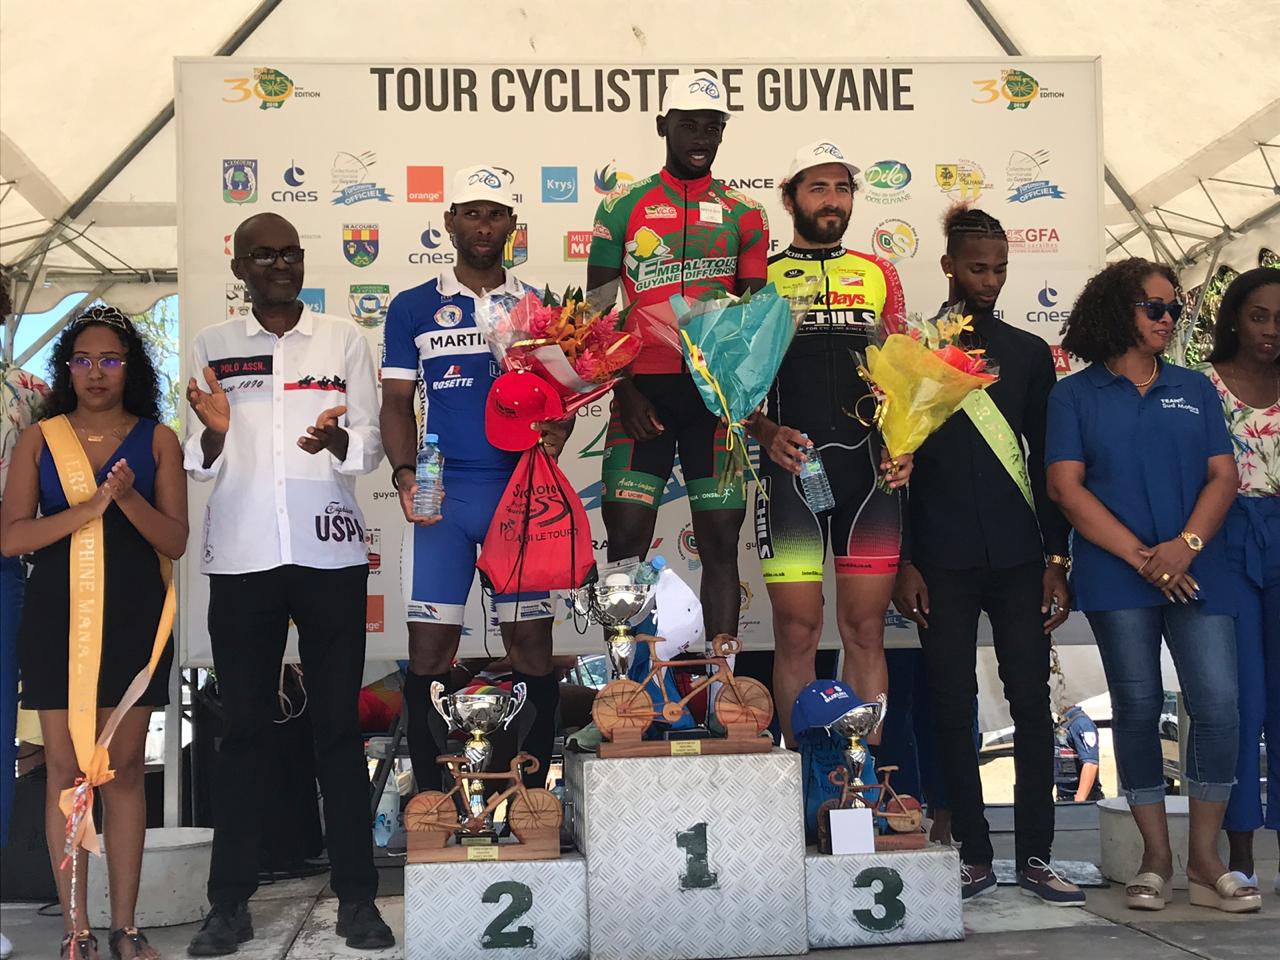     Tour de Guyane : belle deuxième place de Michaël Laurent lors de la quatrième étape

